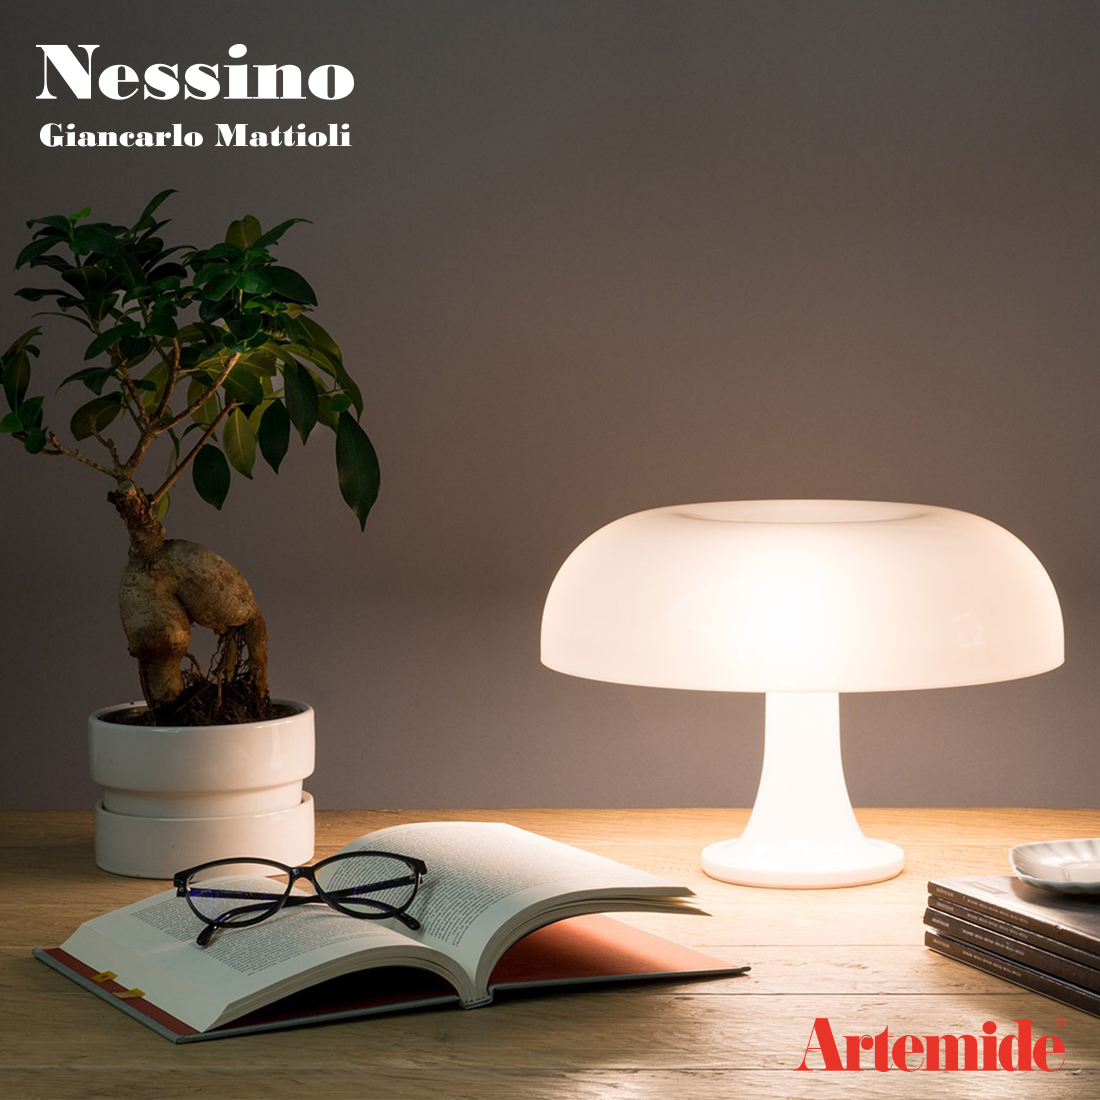 Artemide アルテミデ Nessino ネッシノ テーブルランプ ジャンカルロ・マッティオーリ 電球 間接照明 イタリア